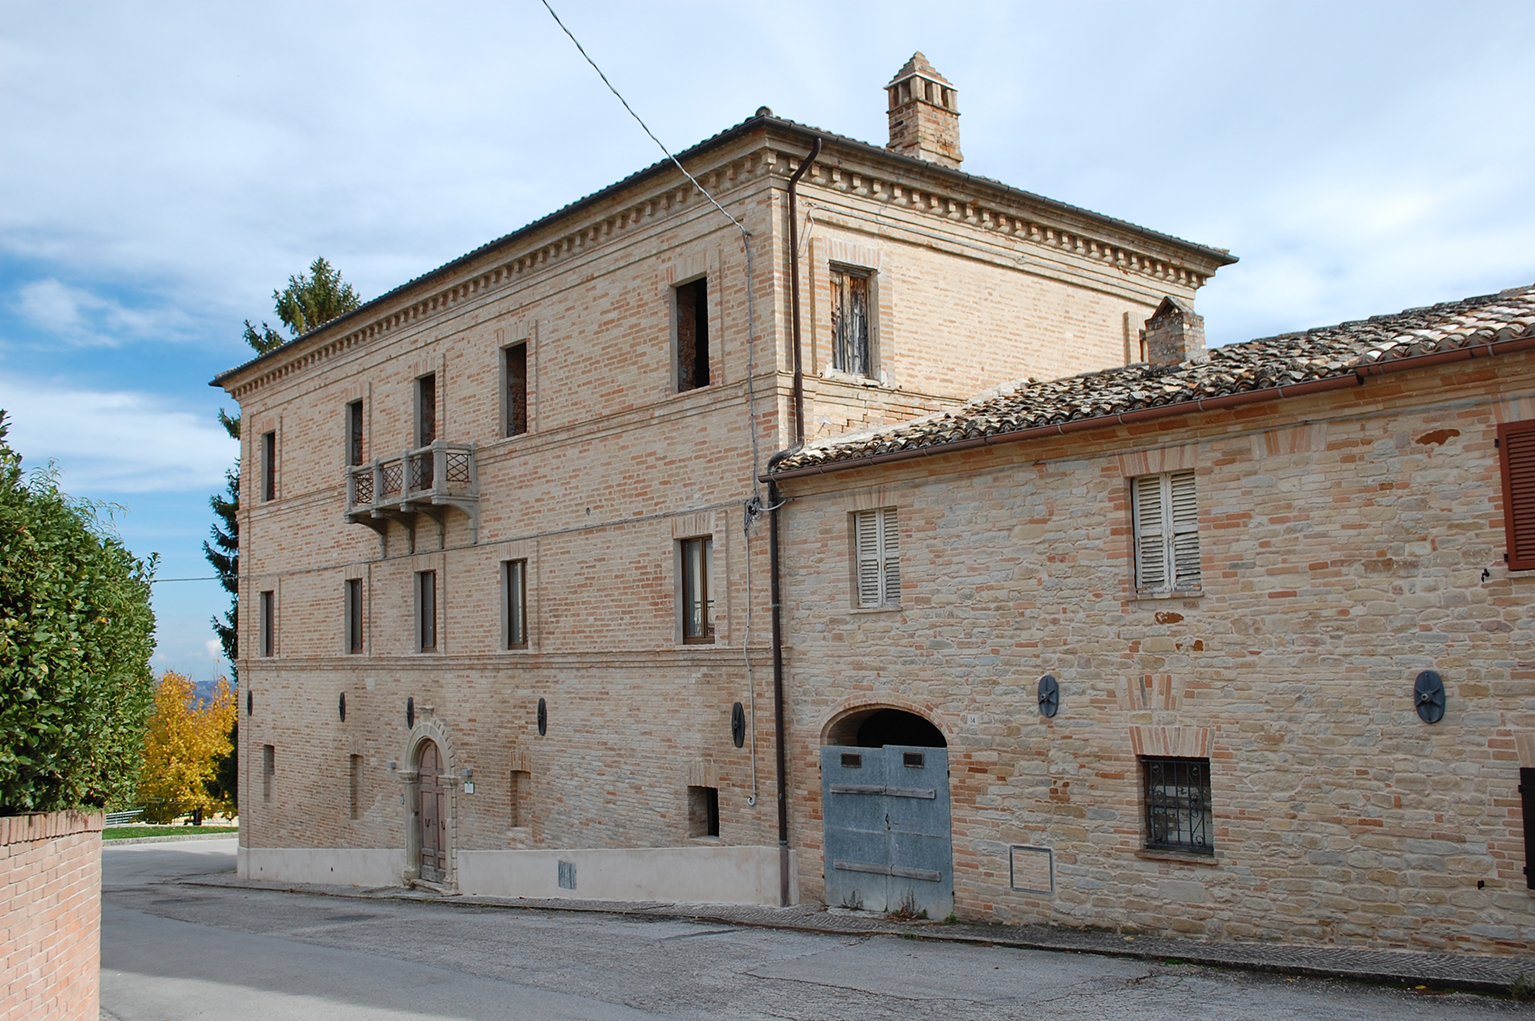 Palazzo ex Marcucci (palazzo, signorile) - Monteleone di Fermo (FM) 